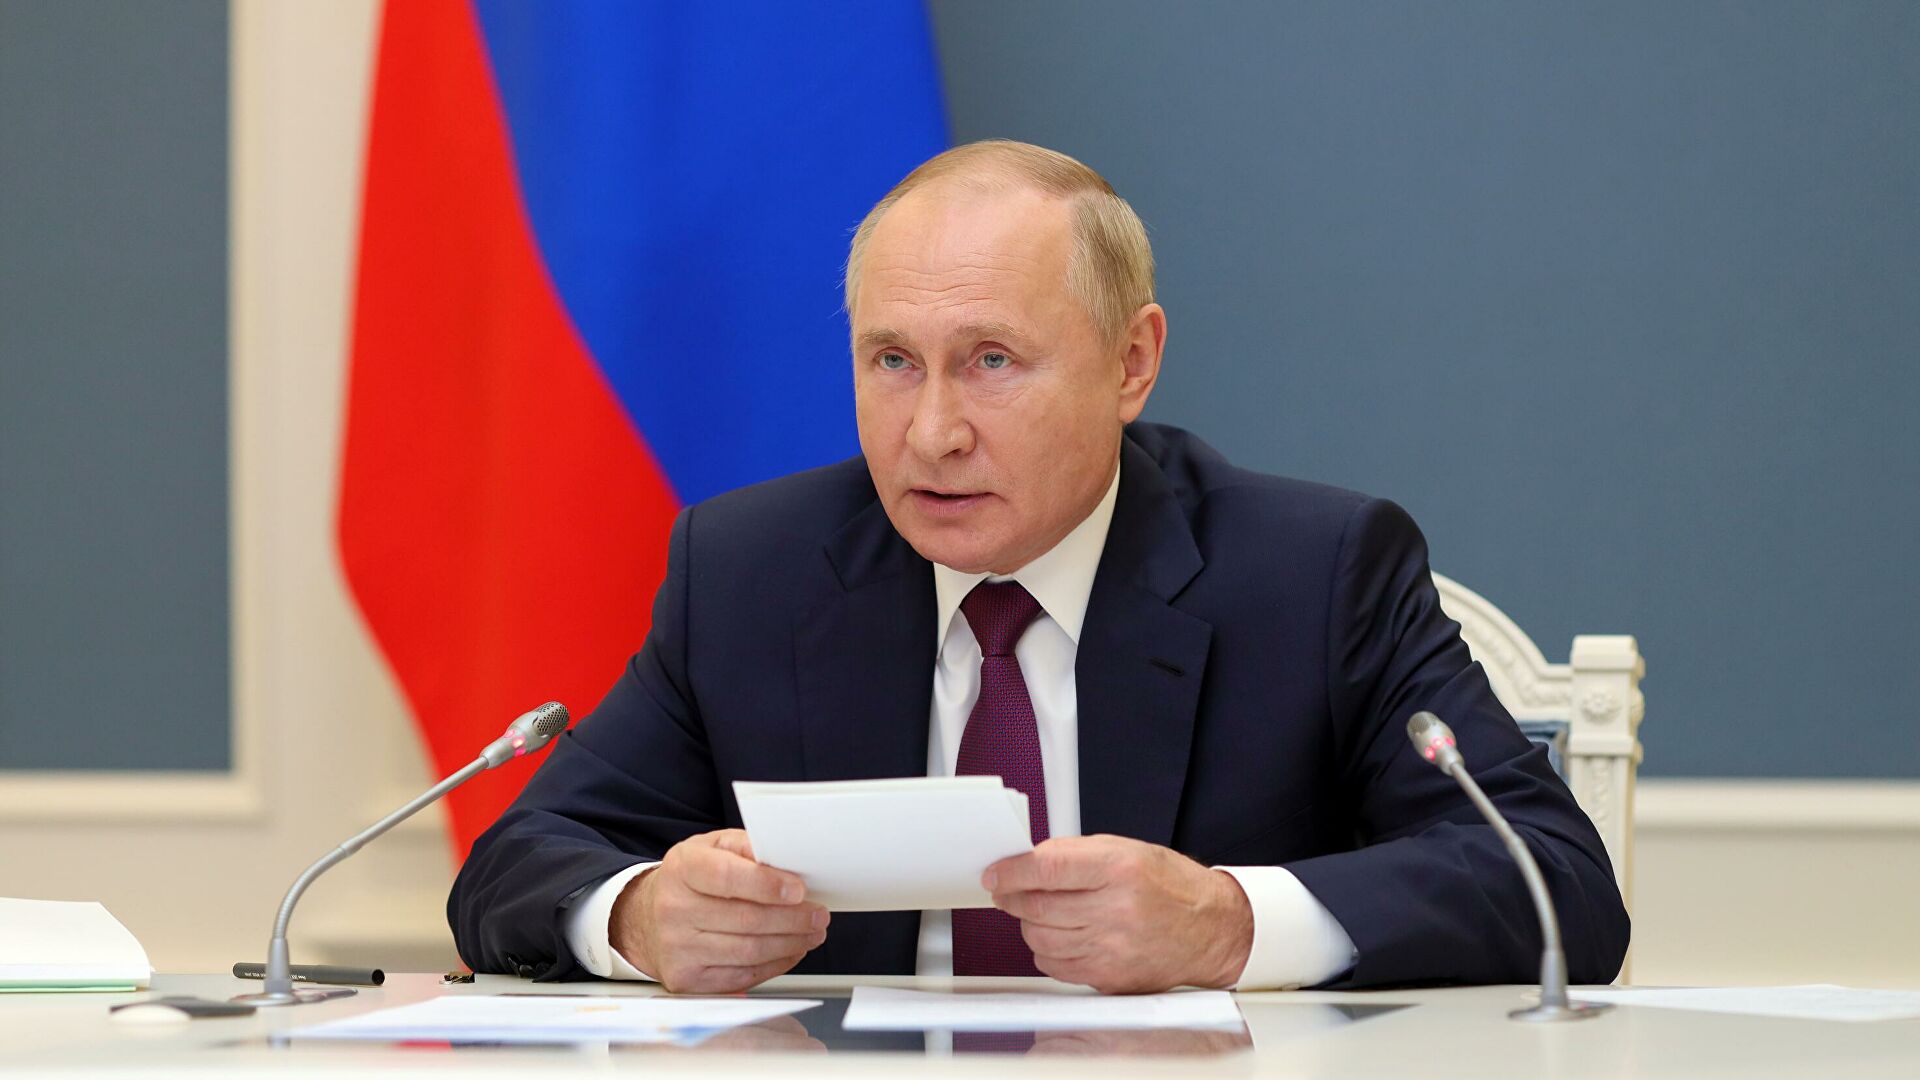 Владимир Путин: Уверен в вас – в солдатах и офицерах России, в том, что вы будете беречь мир и покой наших граждан